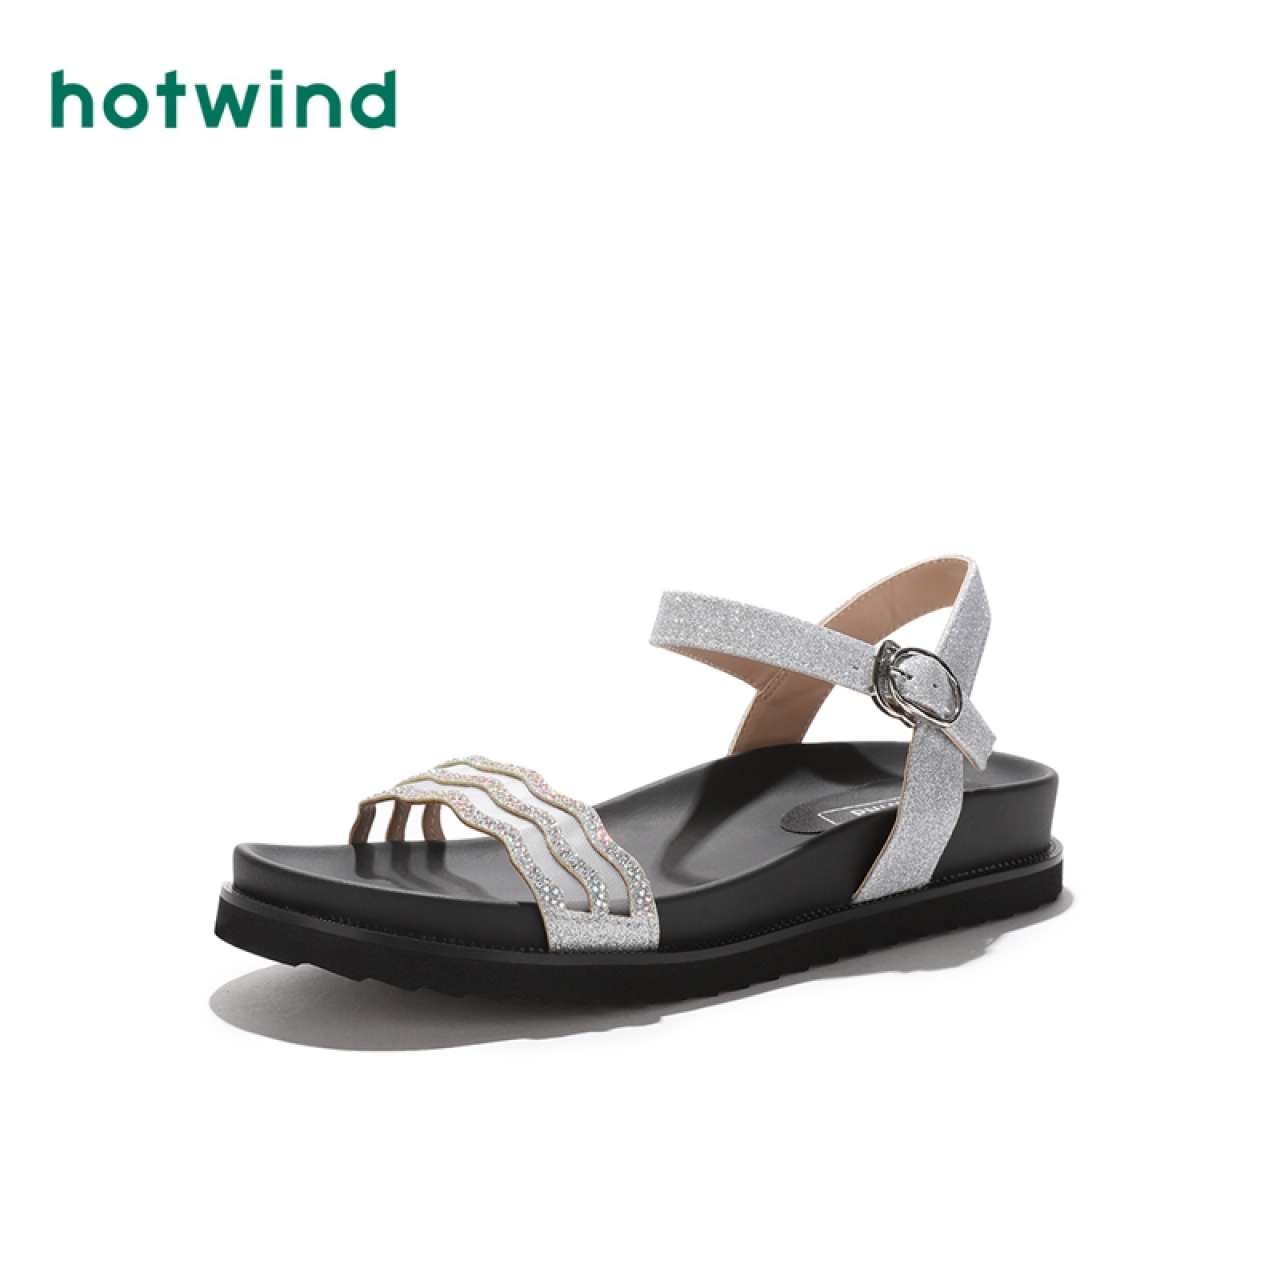 热风女士休闲凉鞋H50W9223,降价幅度33.6%